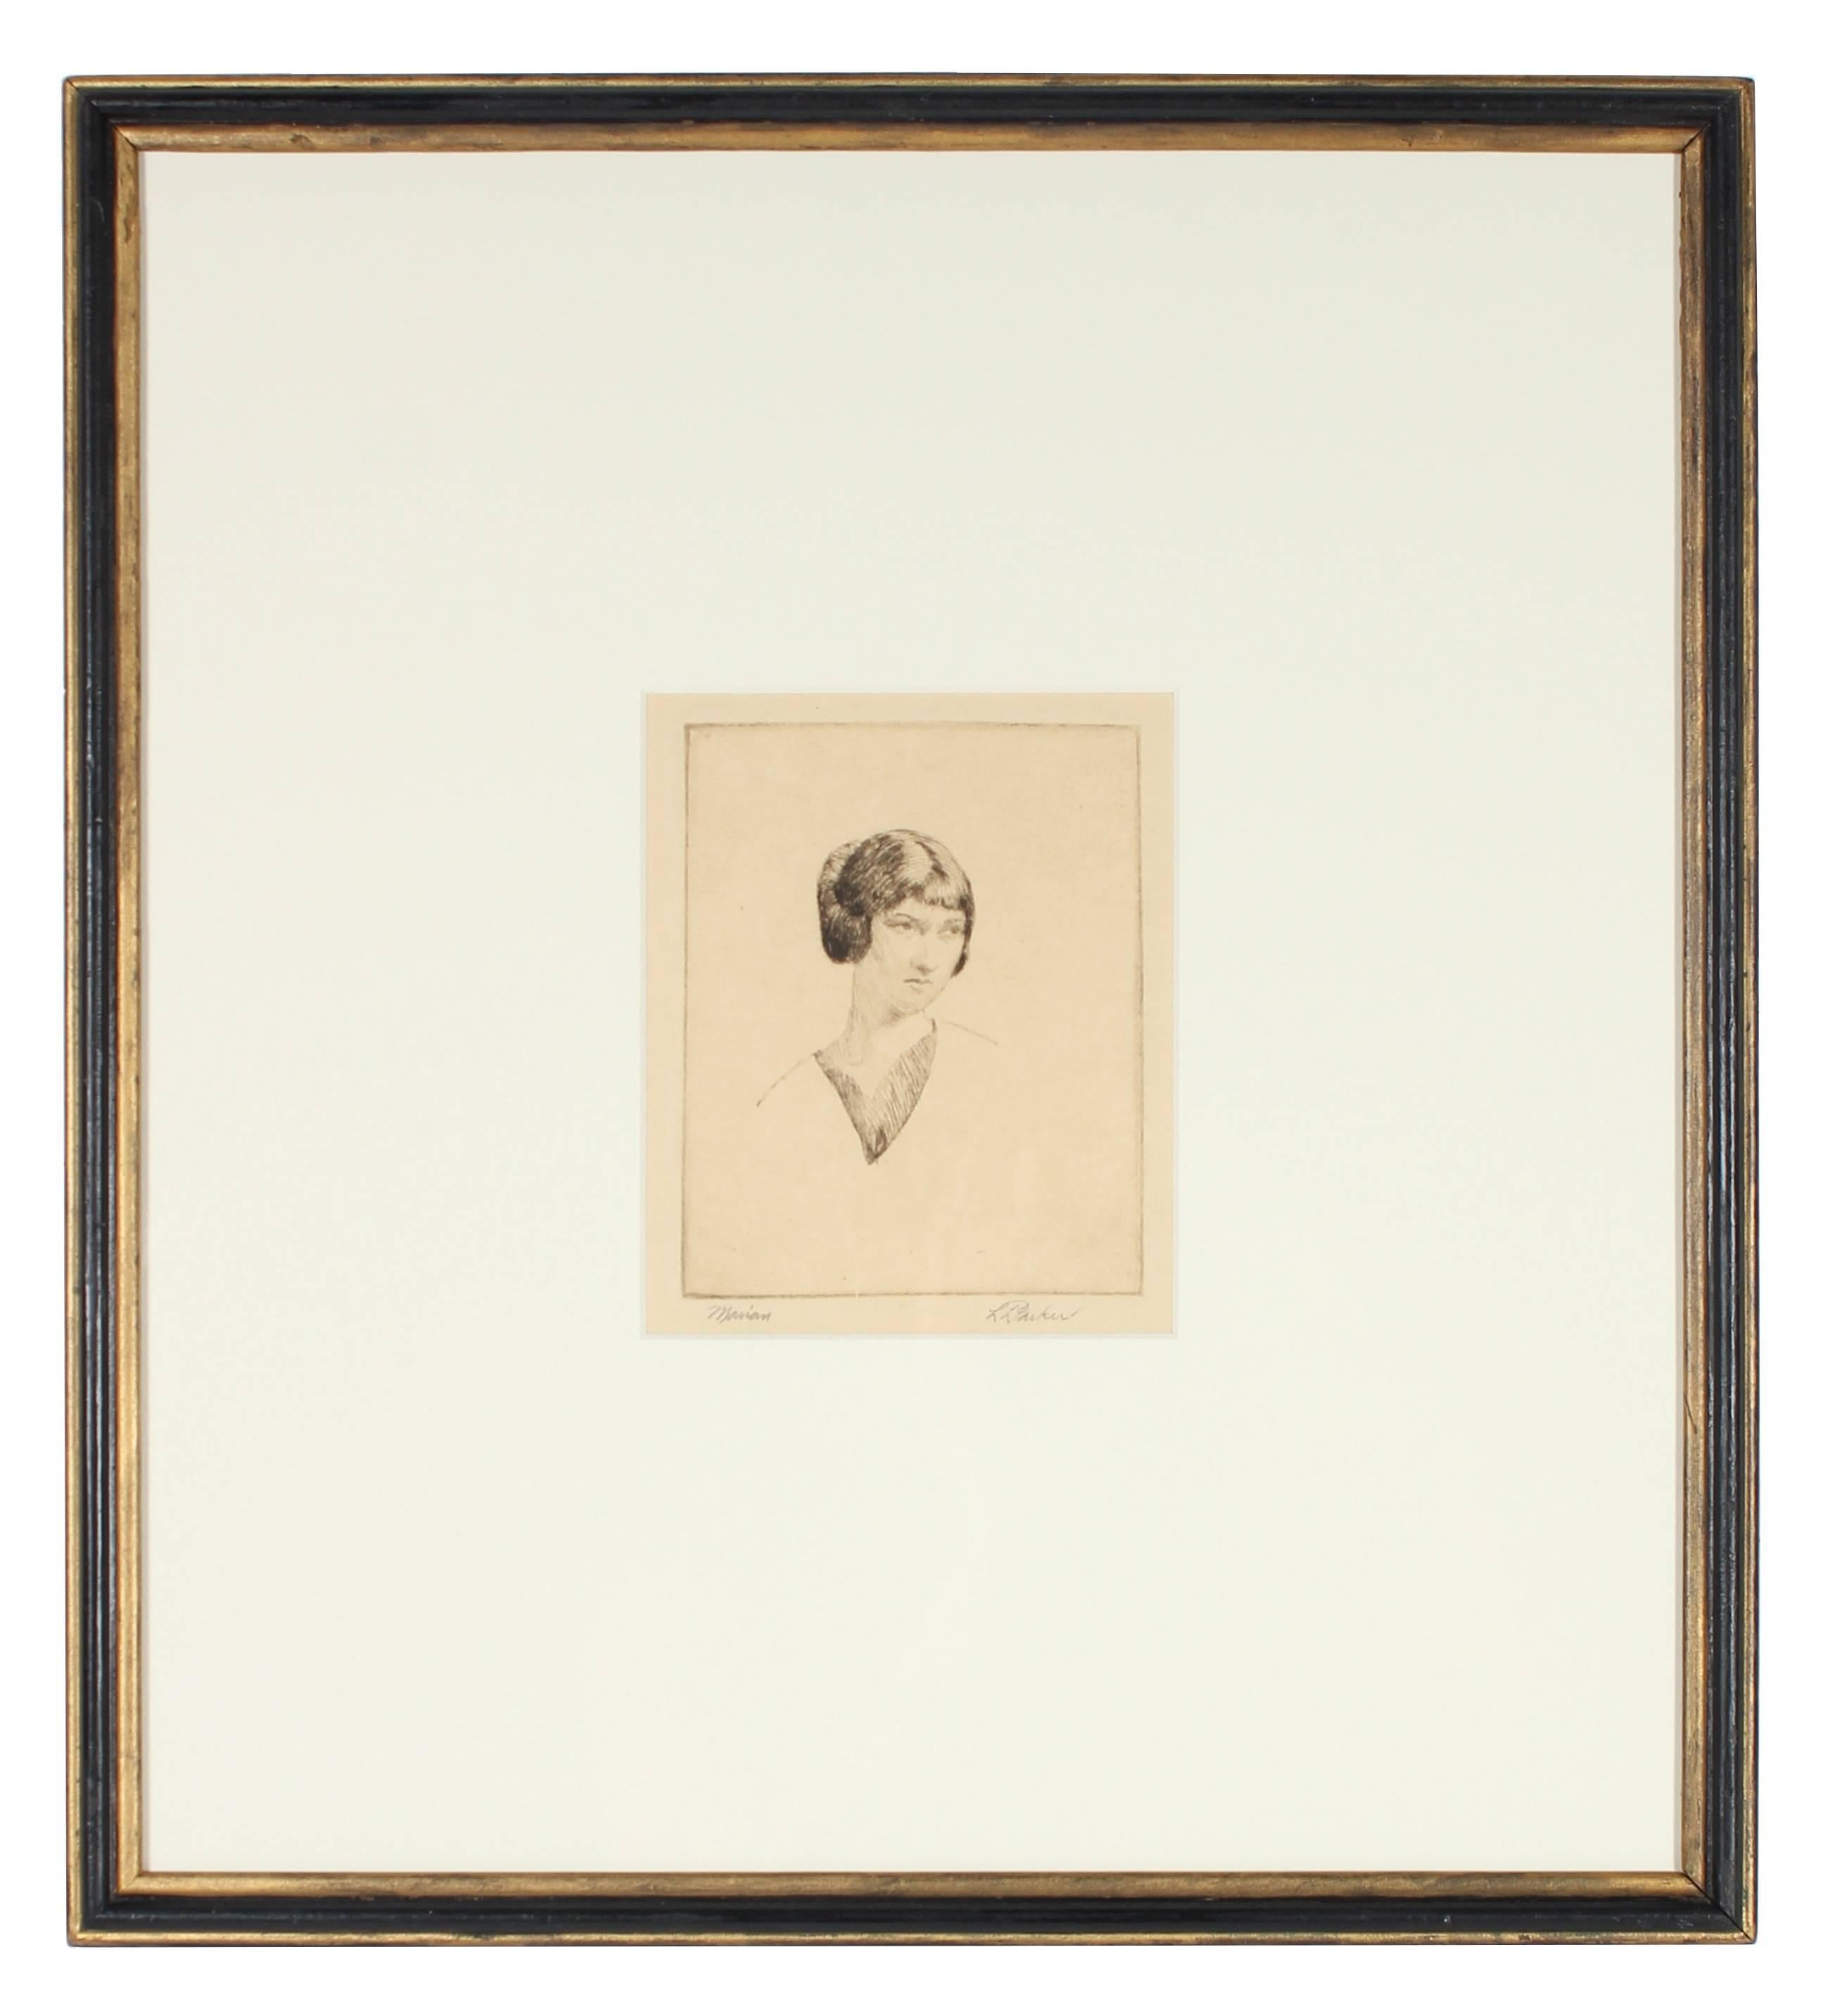 Portrait of a Woman - Print by Lawton S. Parker